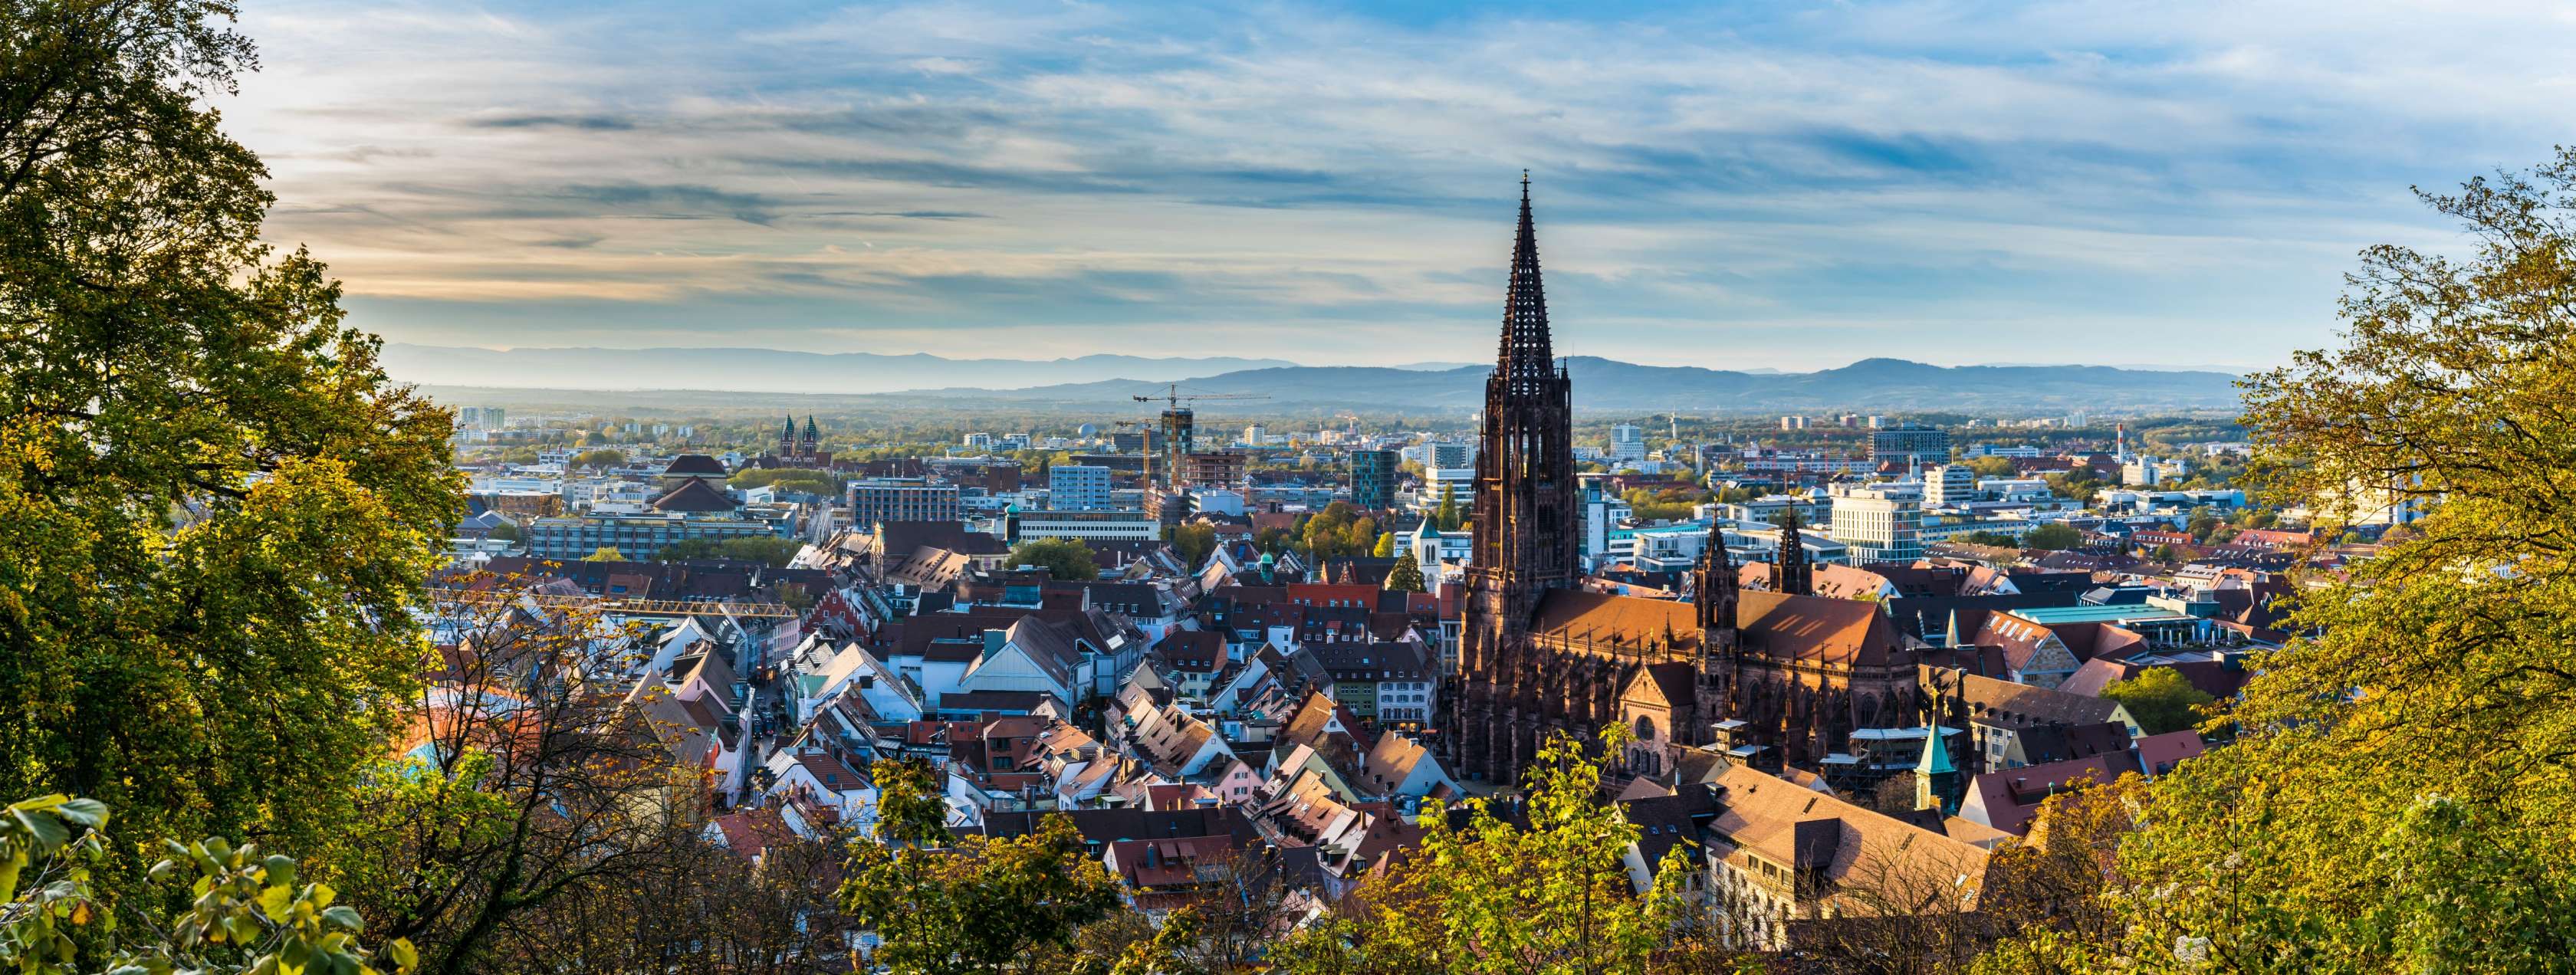 Ausblick auf das Freiburger Münster in Freiburg im Breisgau